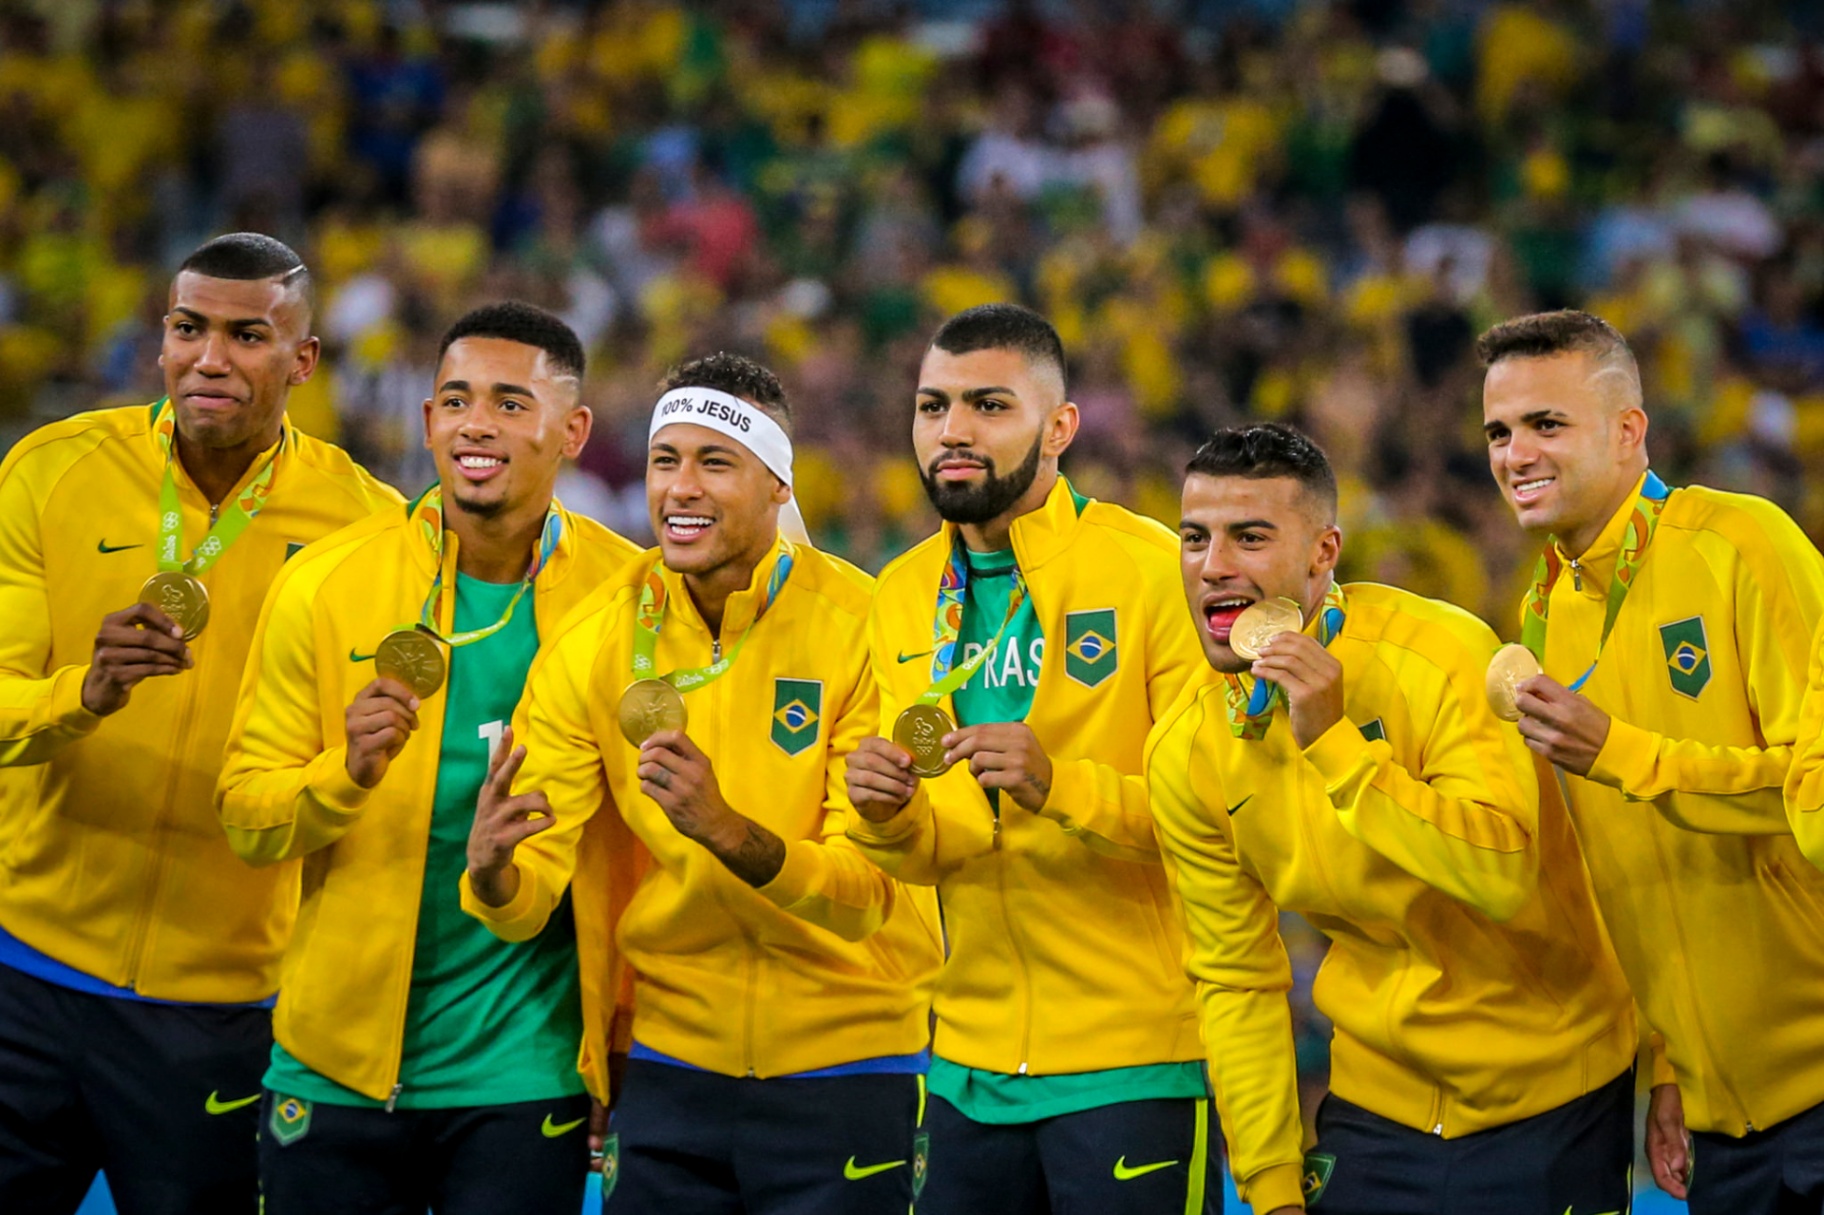 Saiba quantas medalhas o Brasil já conquistou em Olimpíadas